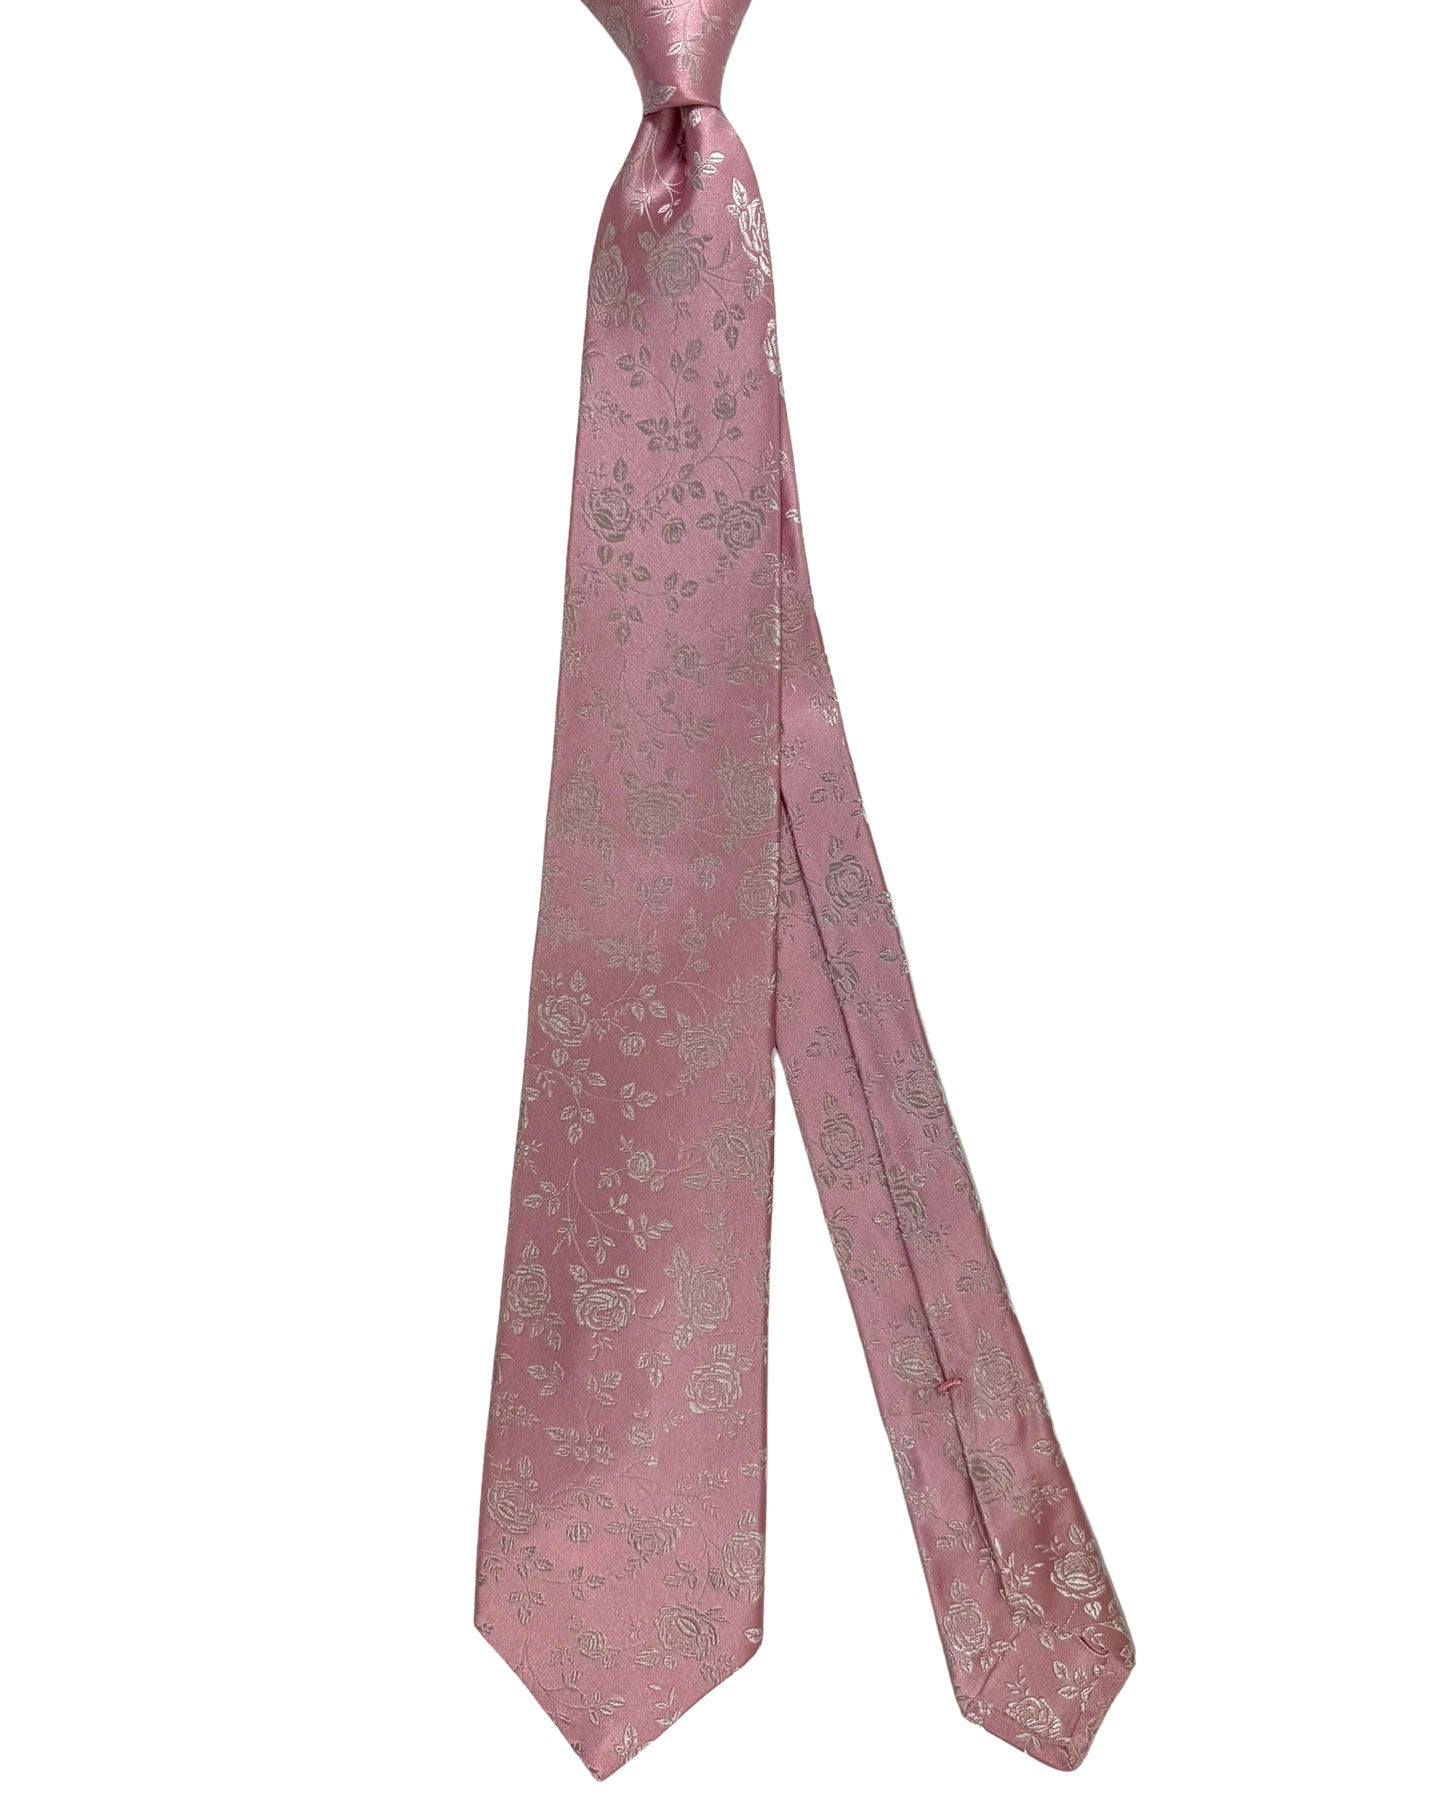 Kiton Silk Tie Pink Silver Floral Design - Sevenfold Necktie